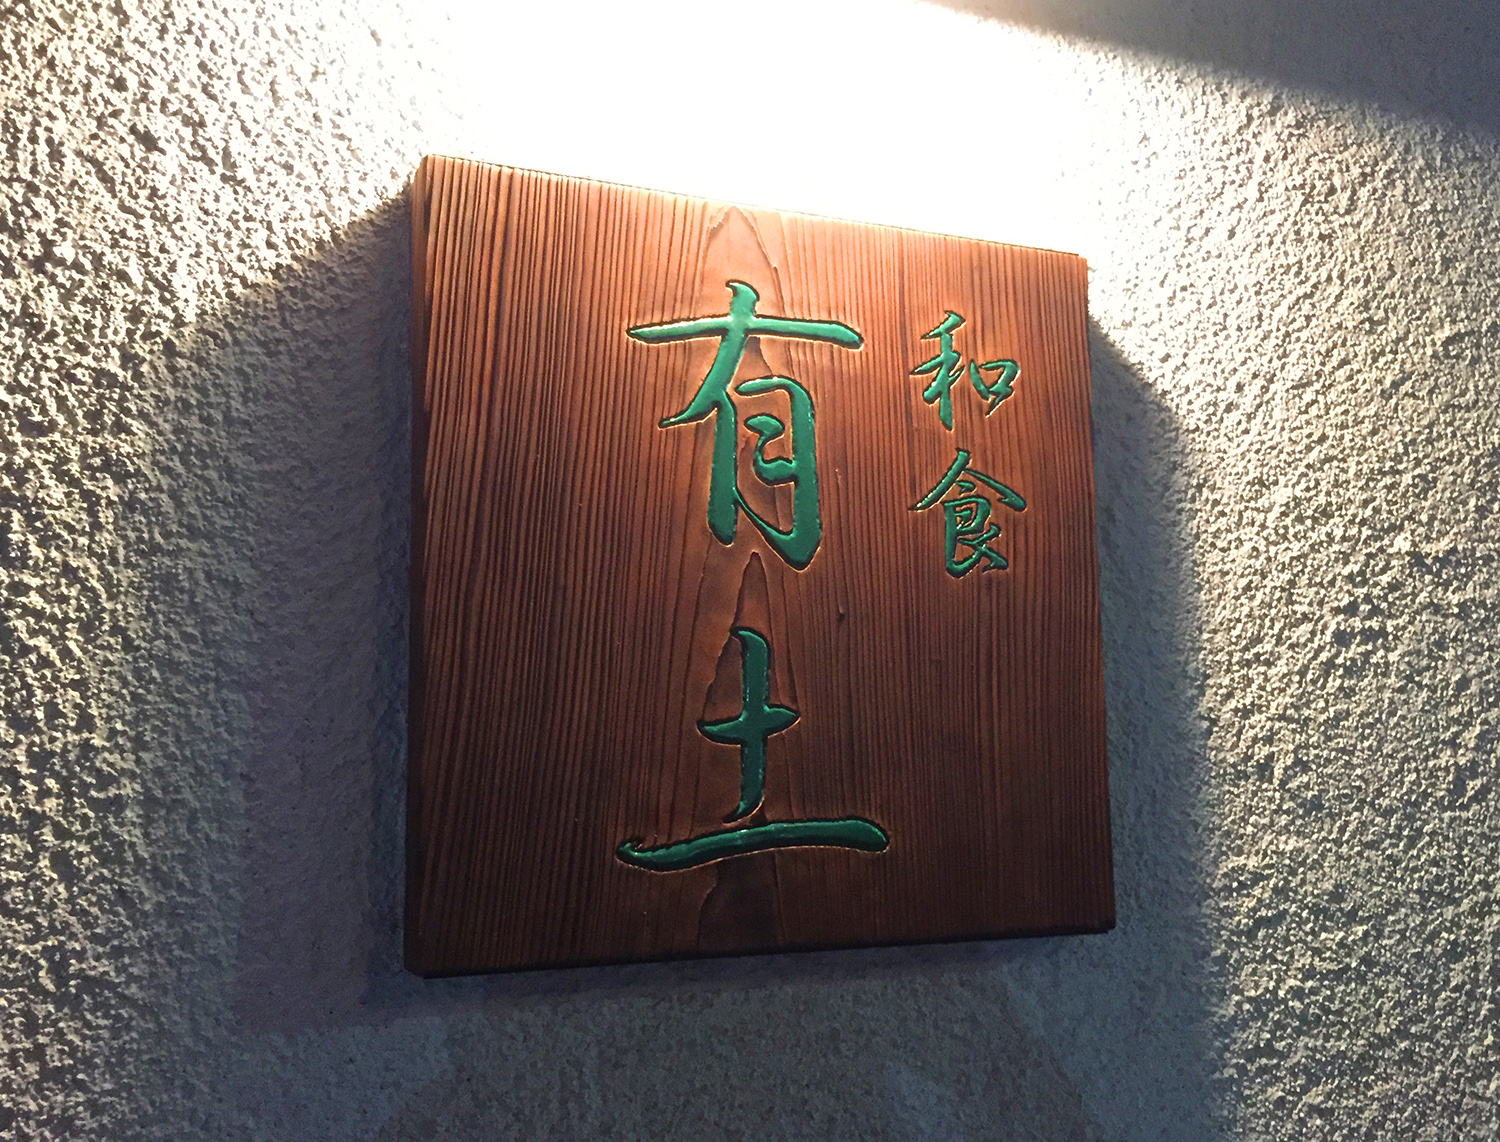 和食店の焼杉を使った木彫り看板 愛知県名古屋市